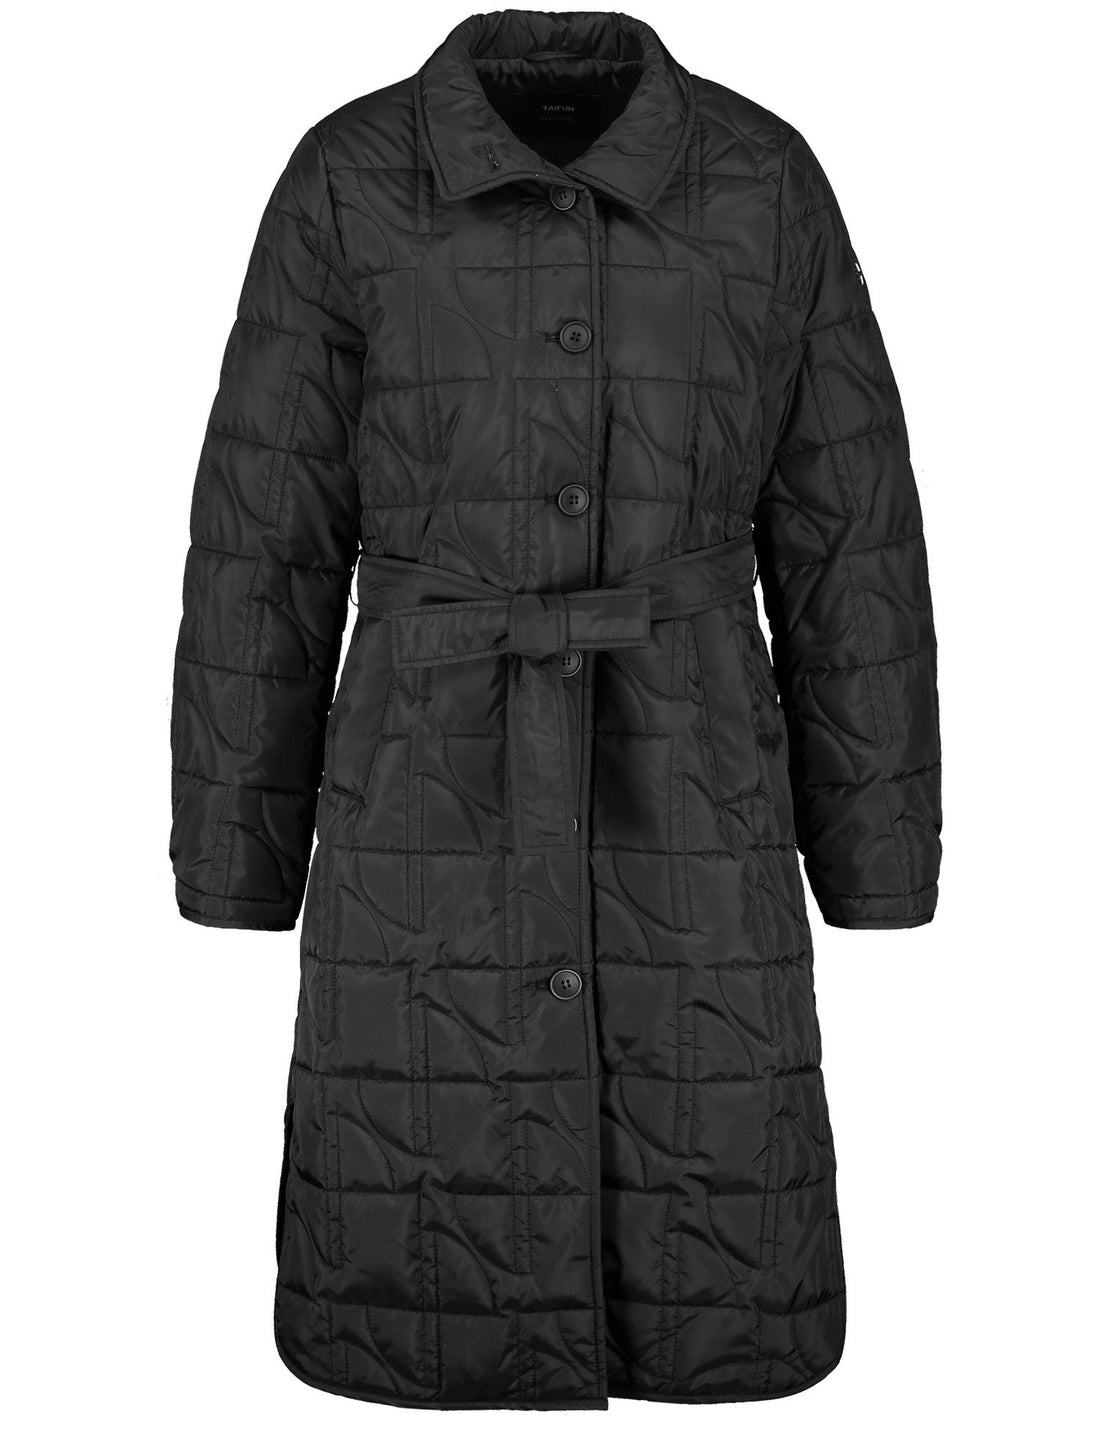 Black Coat With Rounded Hem Slits_450401-11701_1100_01